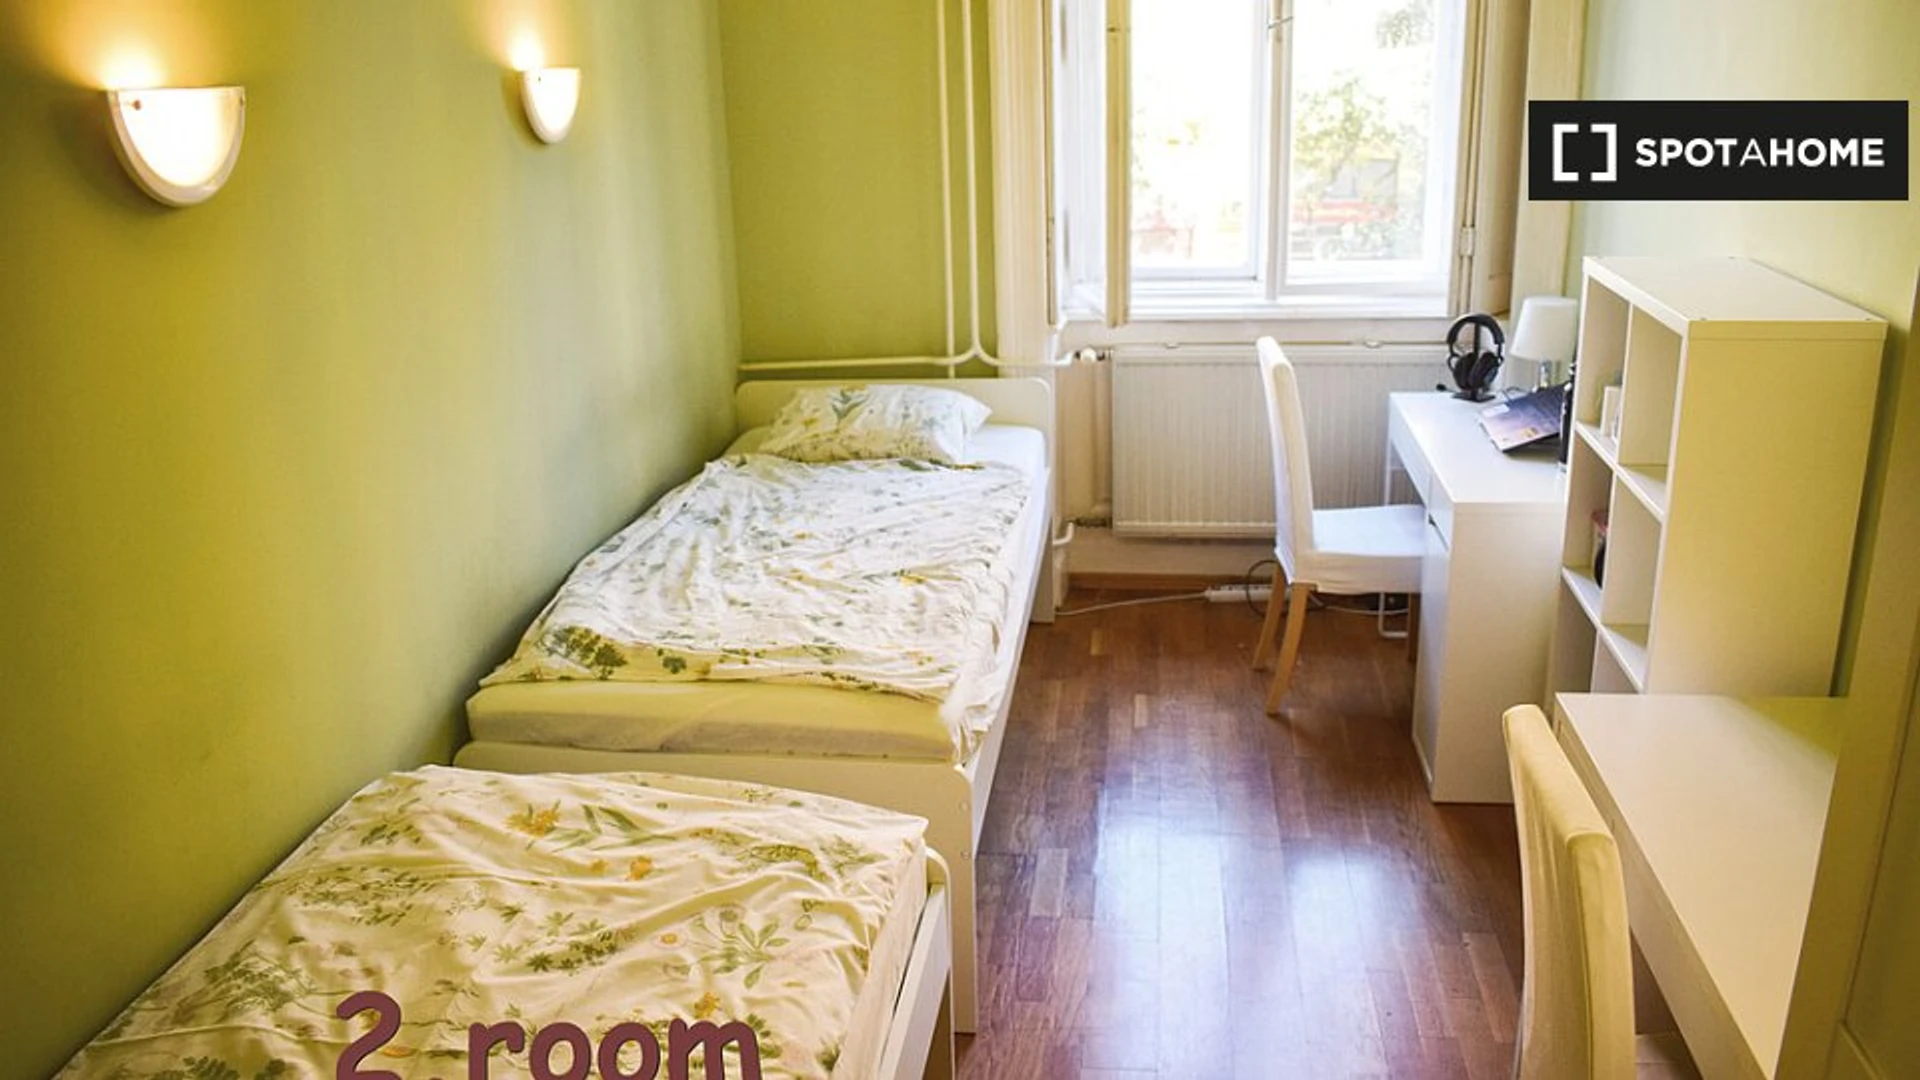 Monatliche Vermietung von Zimmern in Budapest